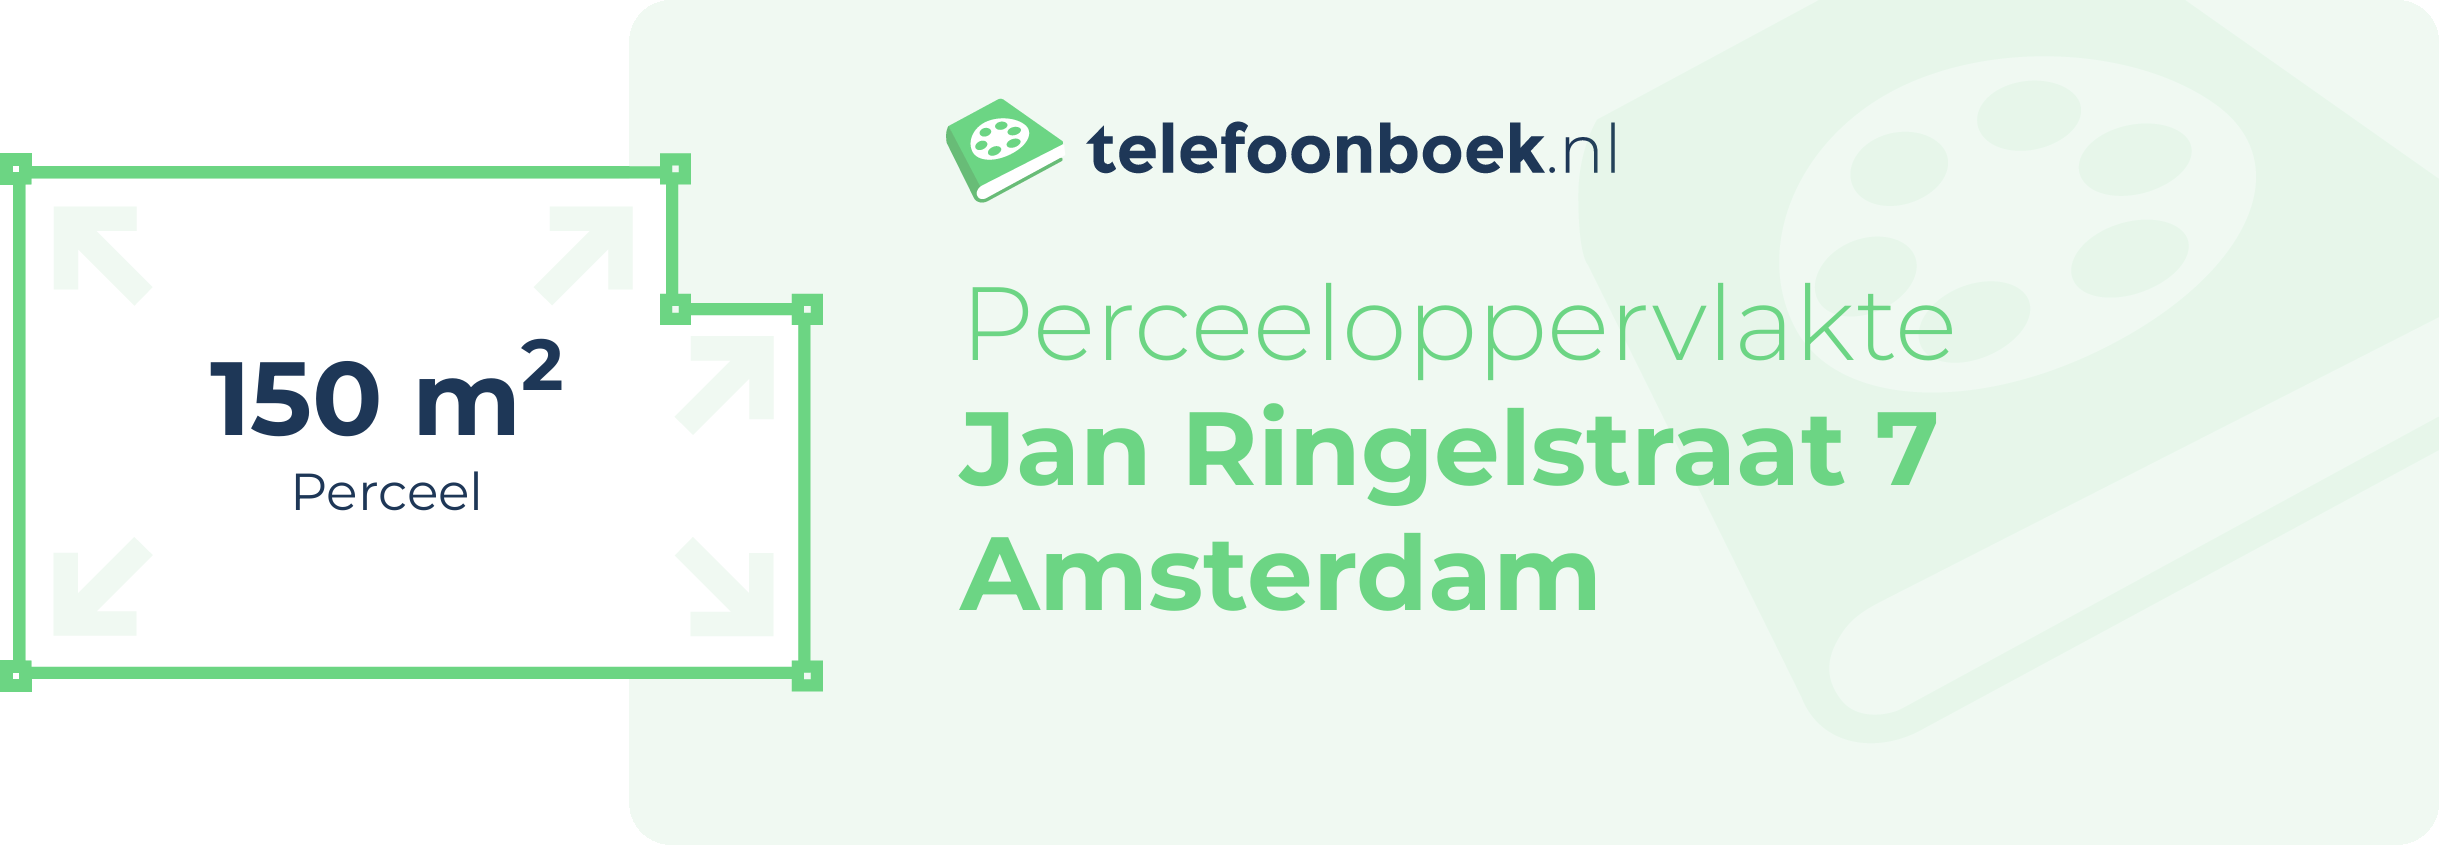 Perceeloppervlakte Jan Ringelstraat 7 Amsterdam